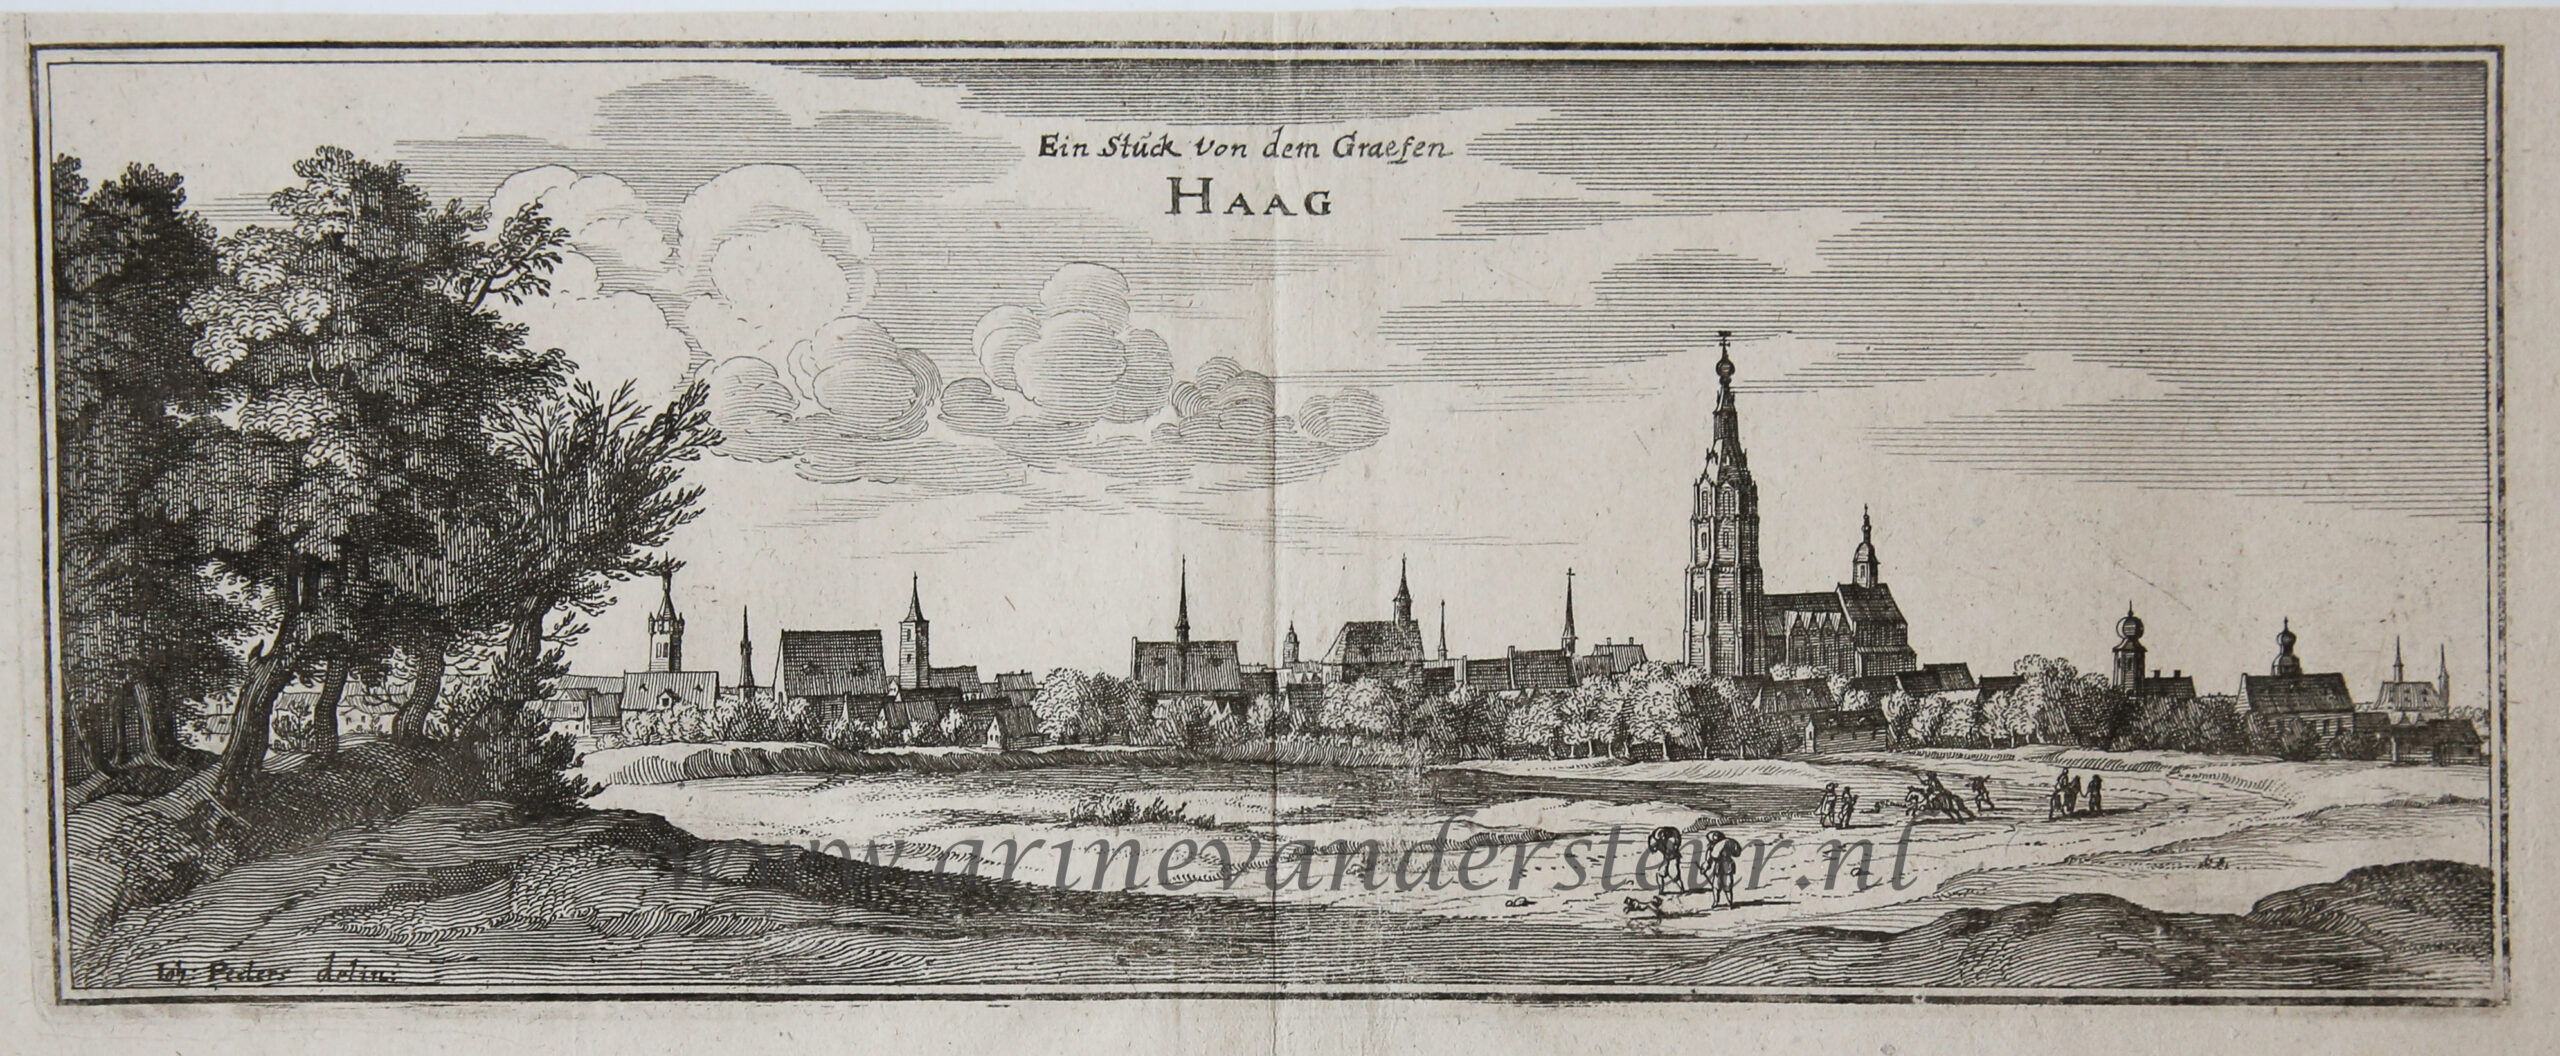 [Antique print; etching] Ein Stuck von dem Graefen HAAG (Den Haag - The Hague), published 1650.